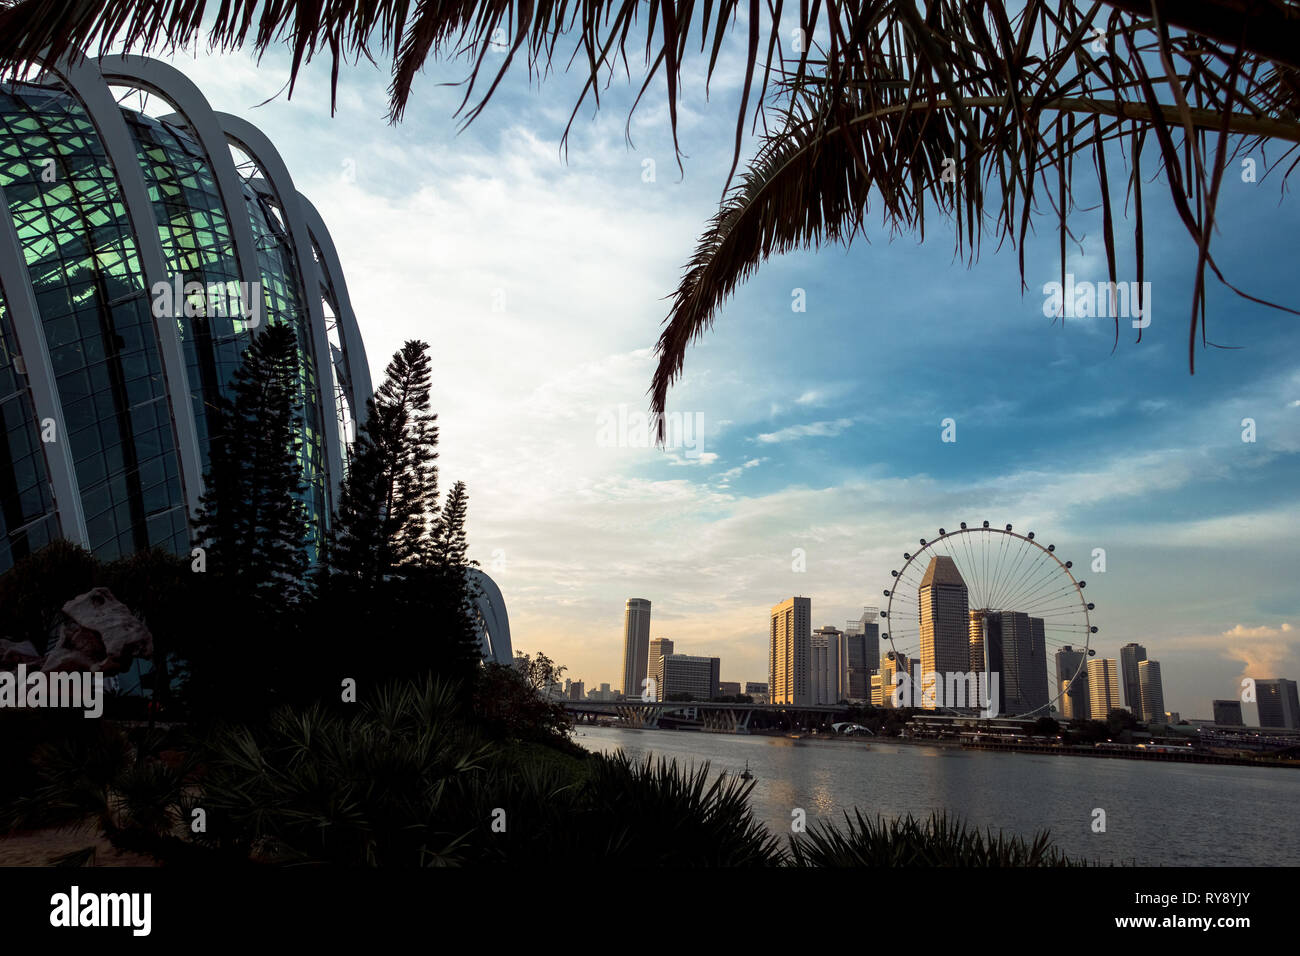 Cupola di fiori e il centro cittadino di edifici con Singapore Flyer ruota panoramica Ferris, da giardini in bay - Singapore Foto Stock